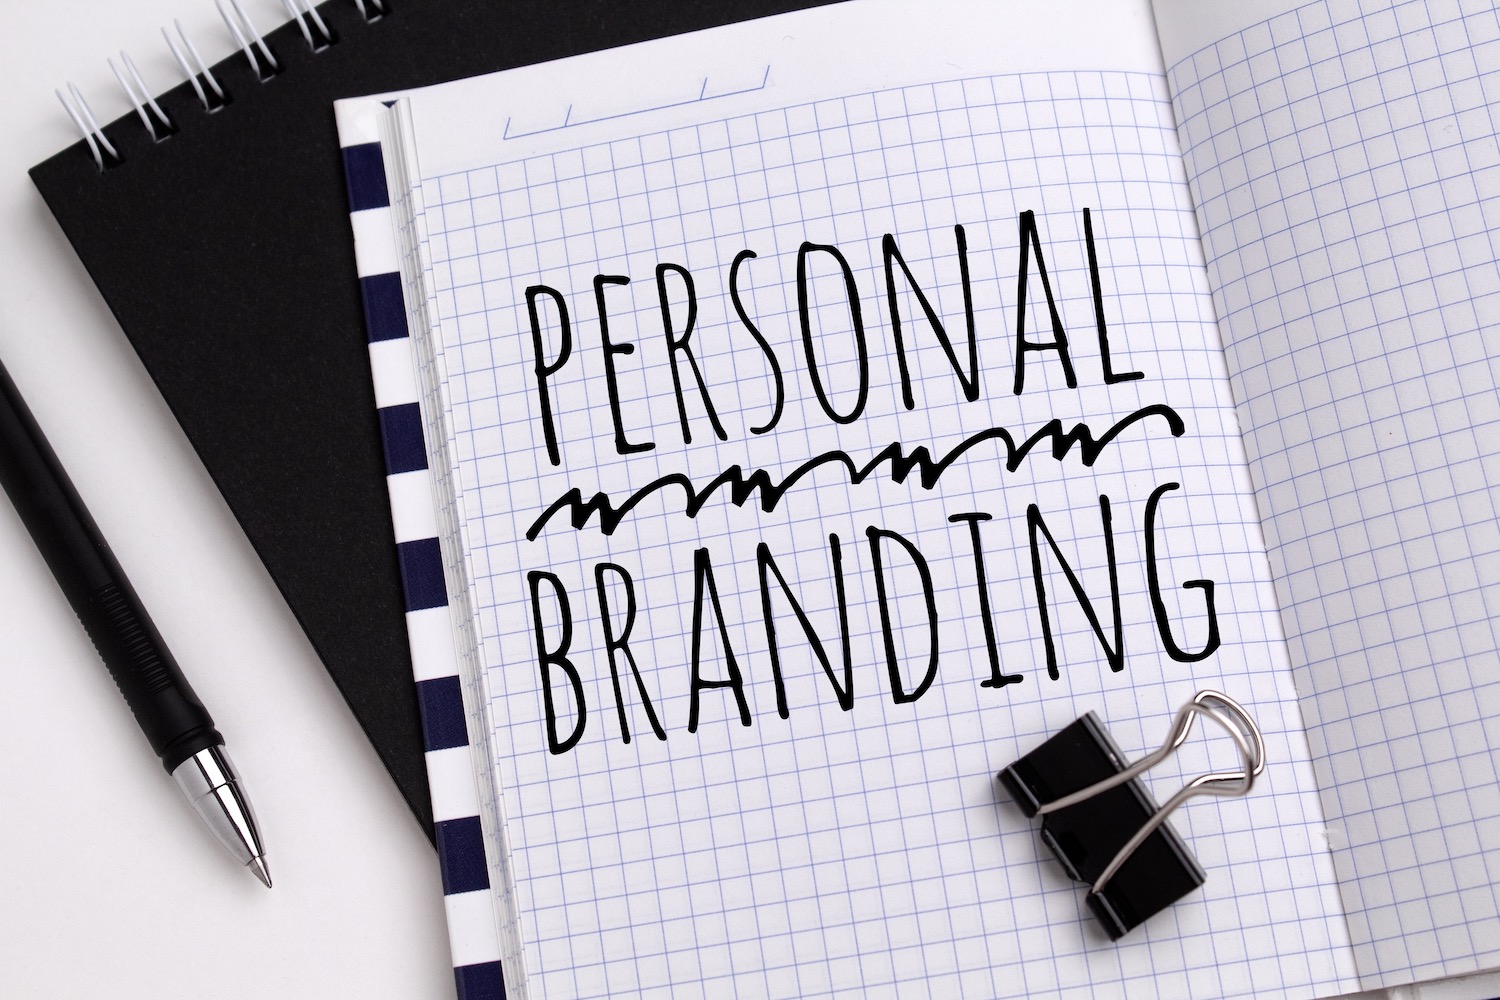 Le personal branding, qu’est-ce que c’est, comment l’utiliser ?